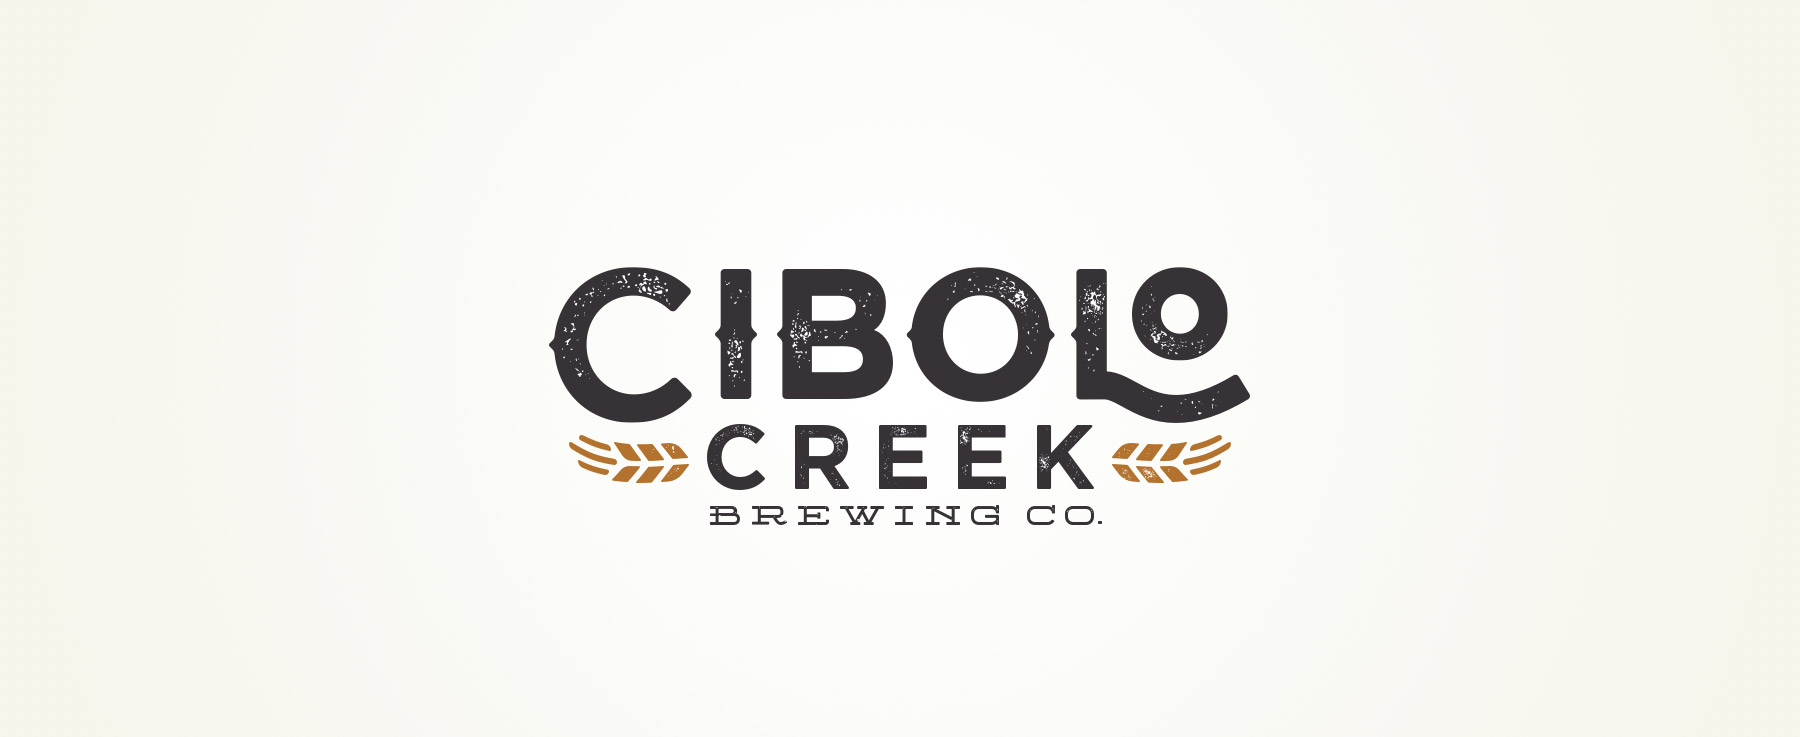 Cibolo Creek - Logo Design